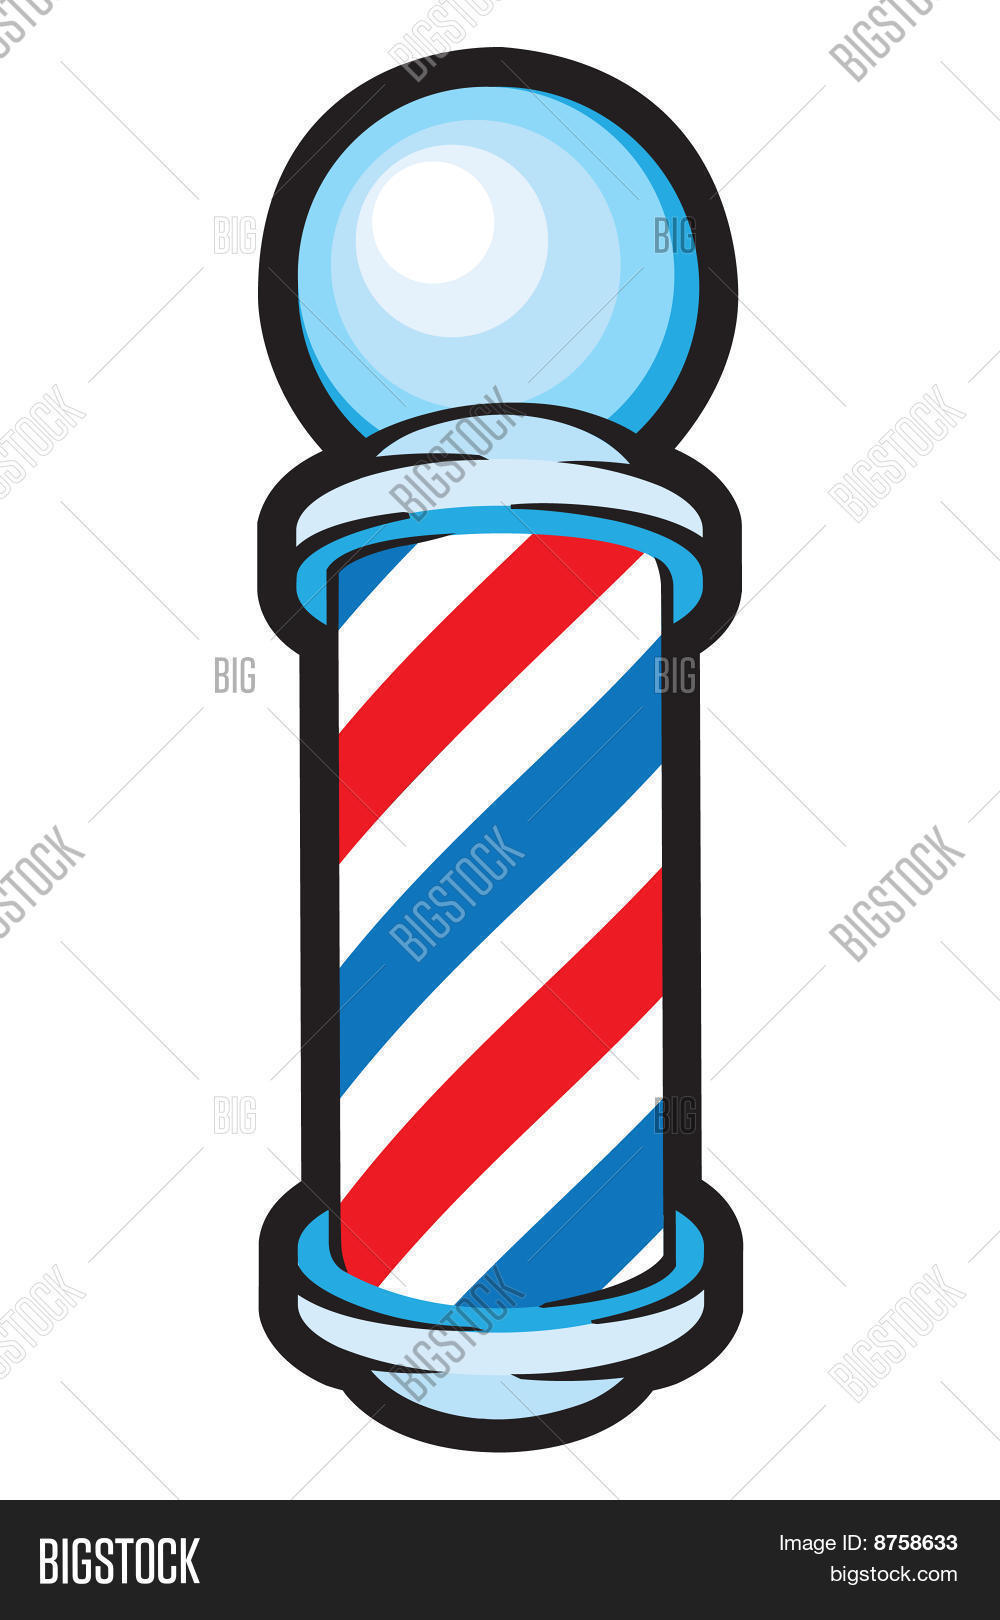 Barber barber pole